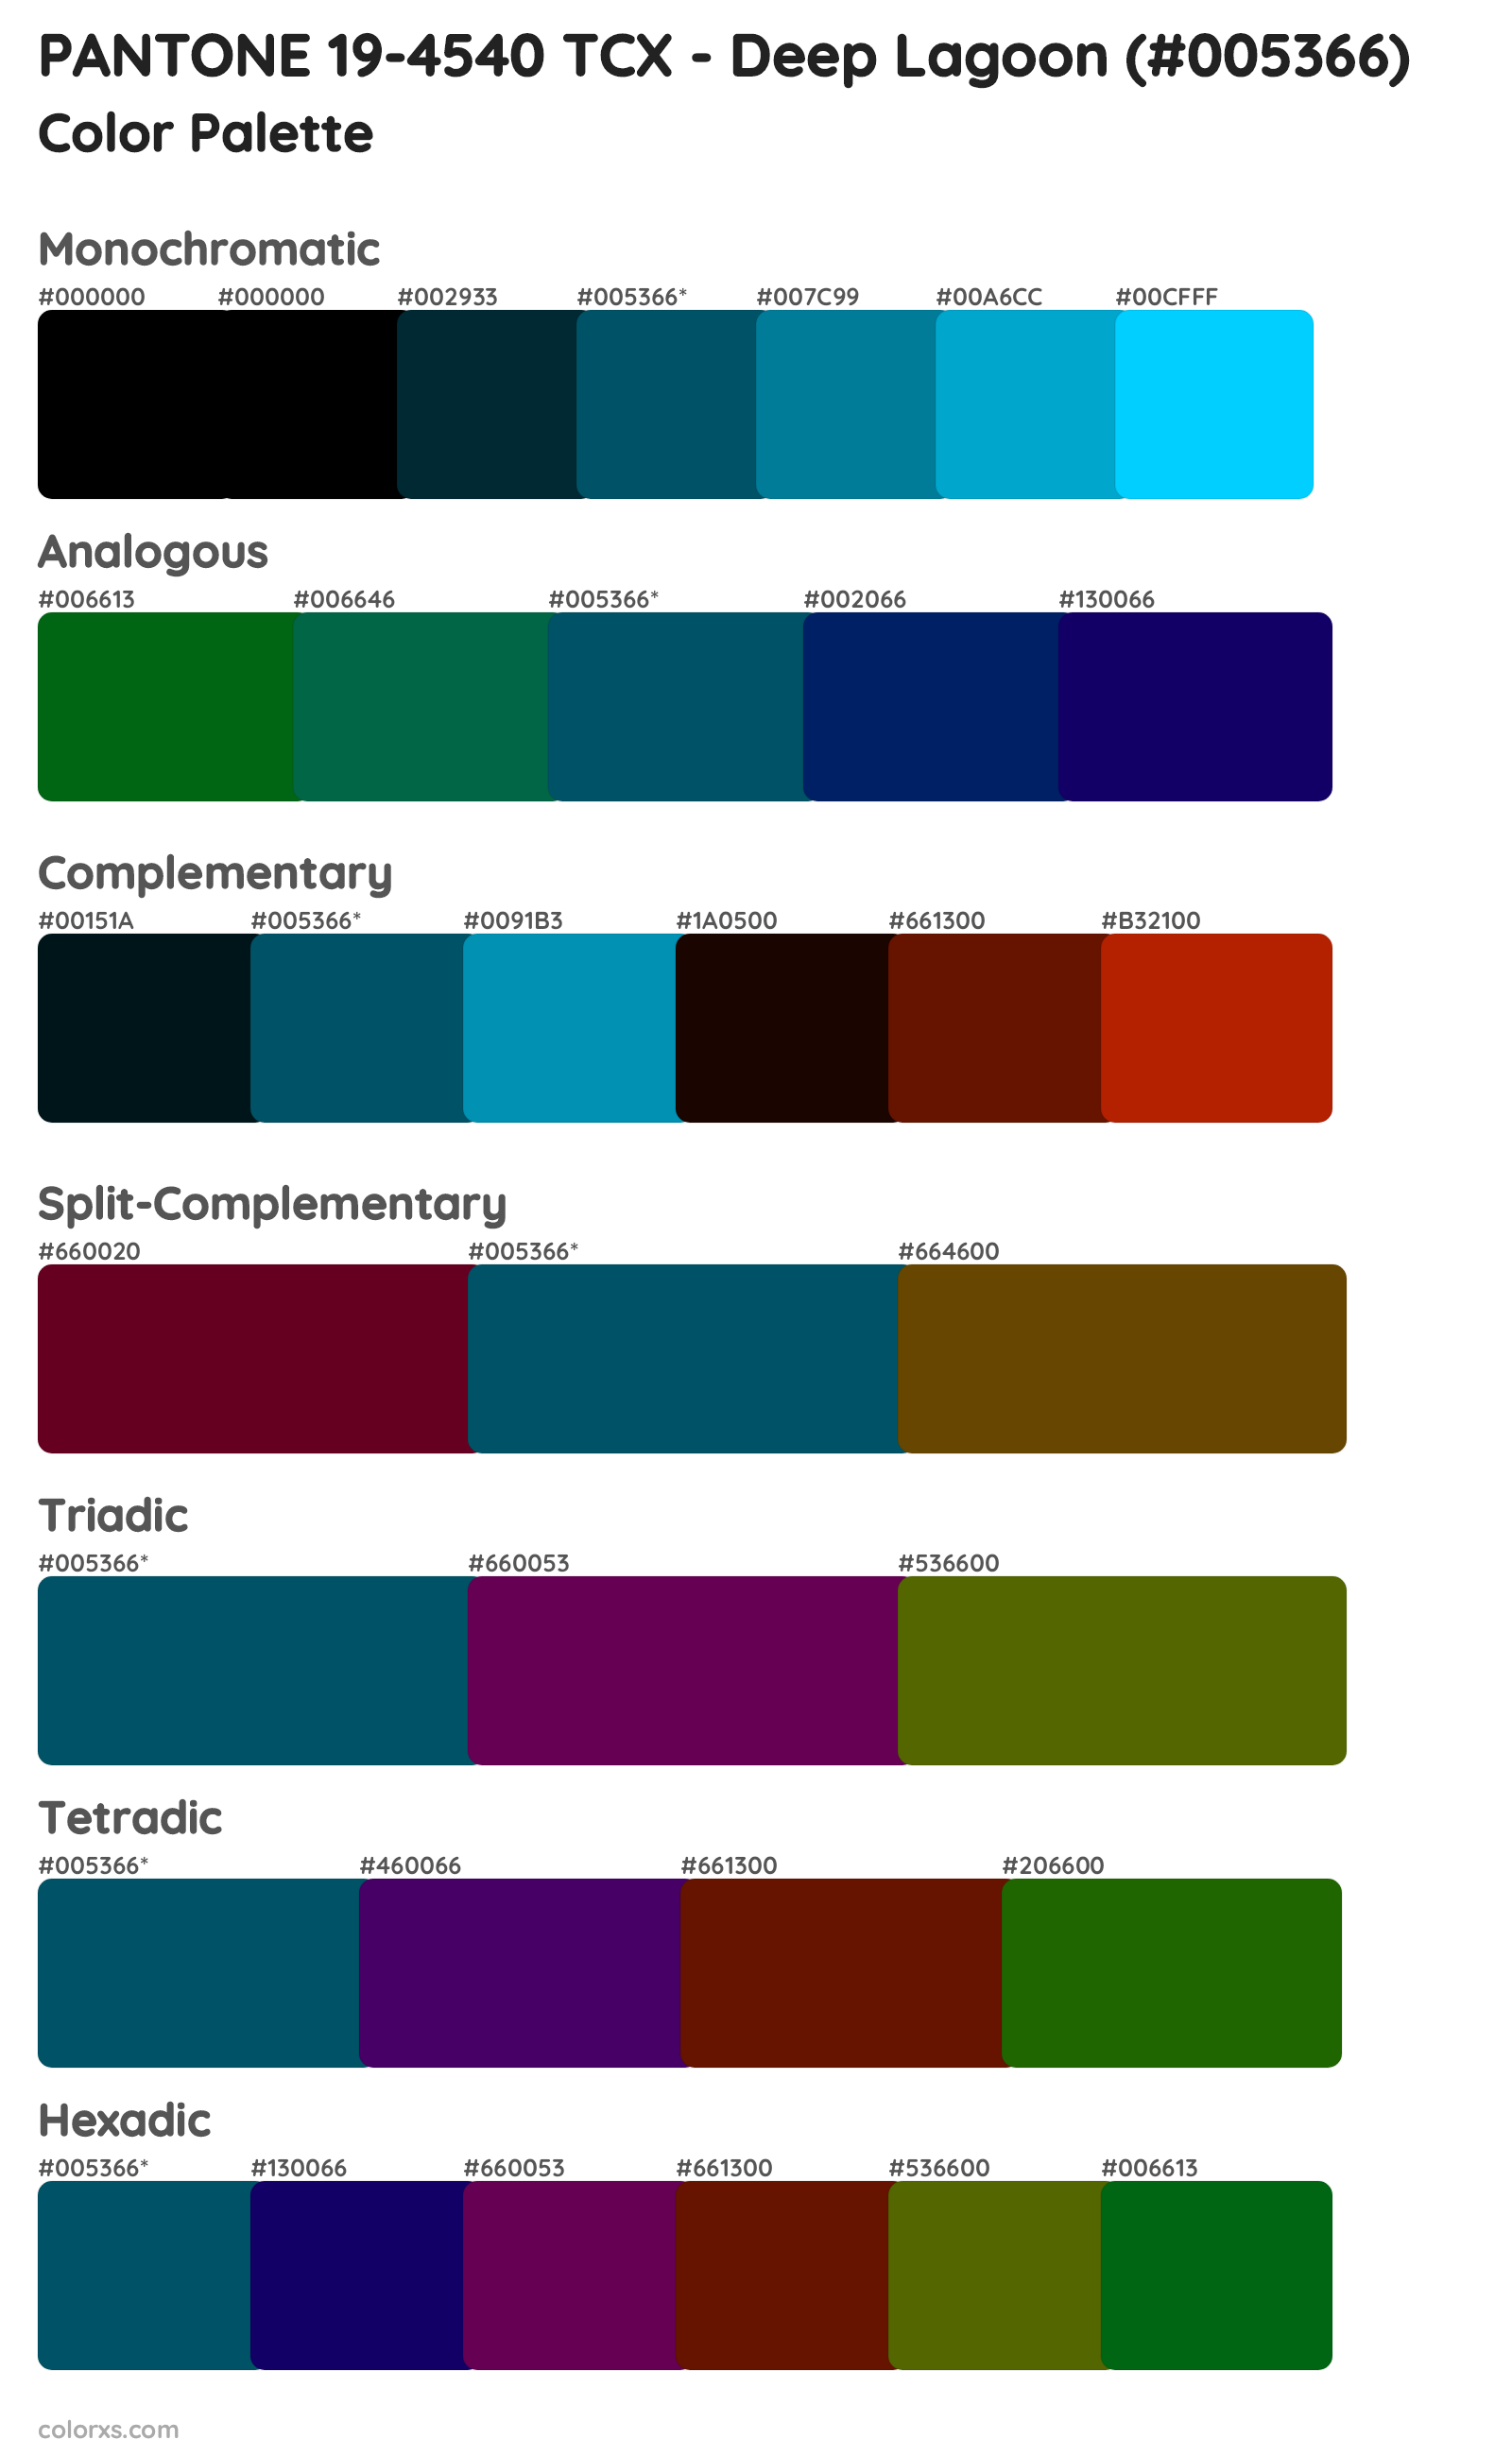 PANTONE 19-4540 TCX - Deep Lagoon Color Scheme Palettes